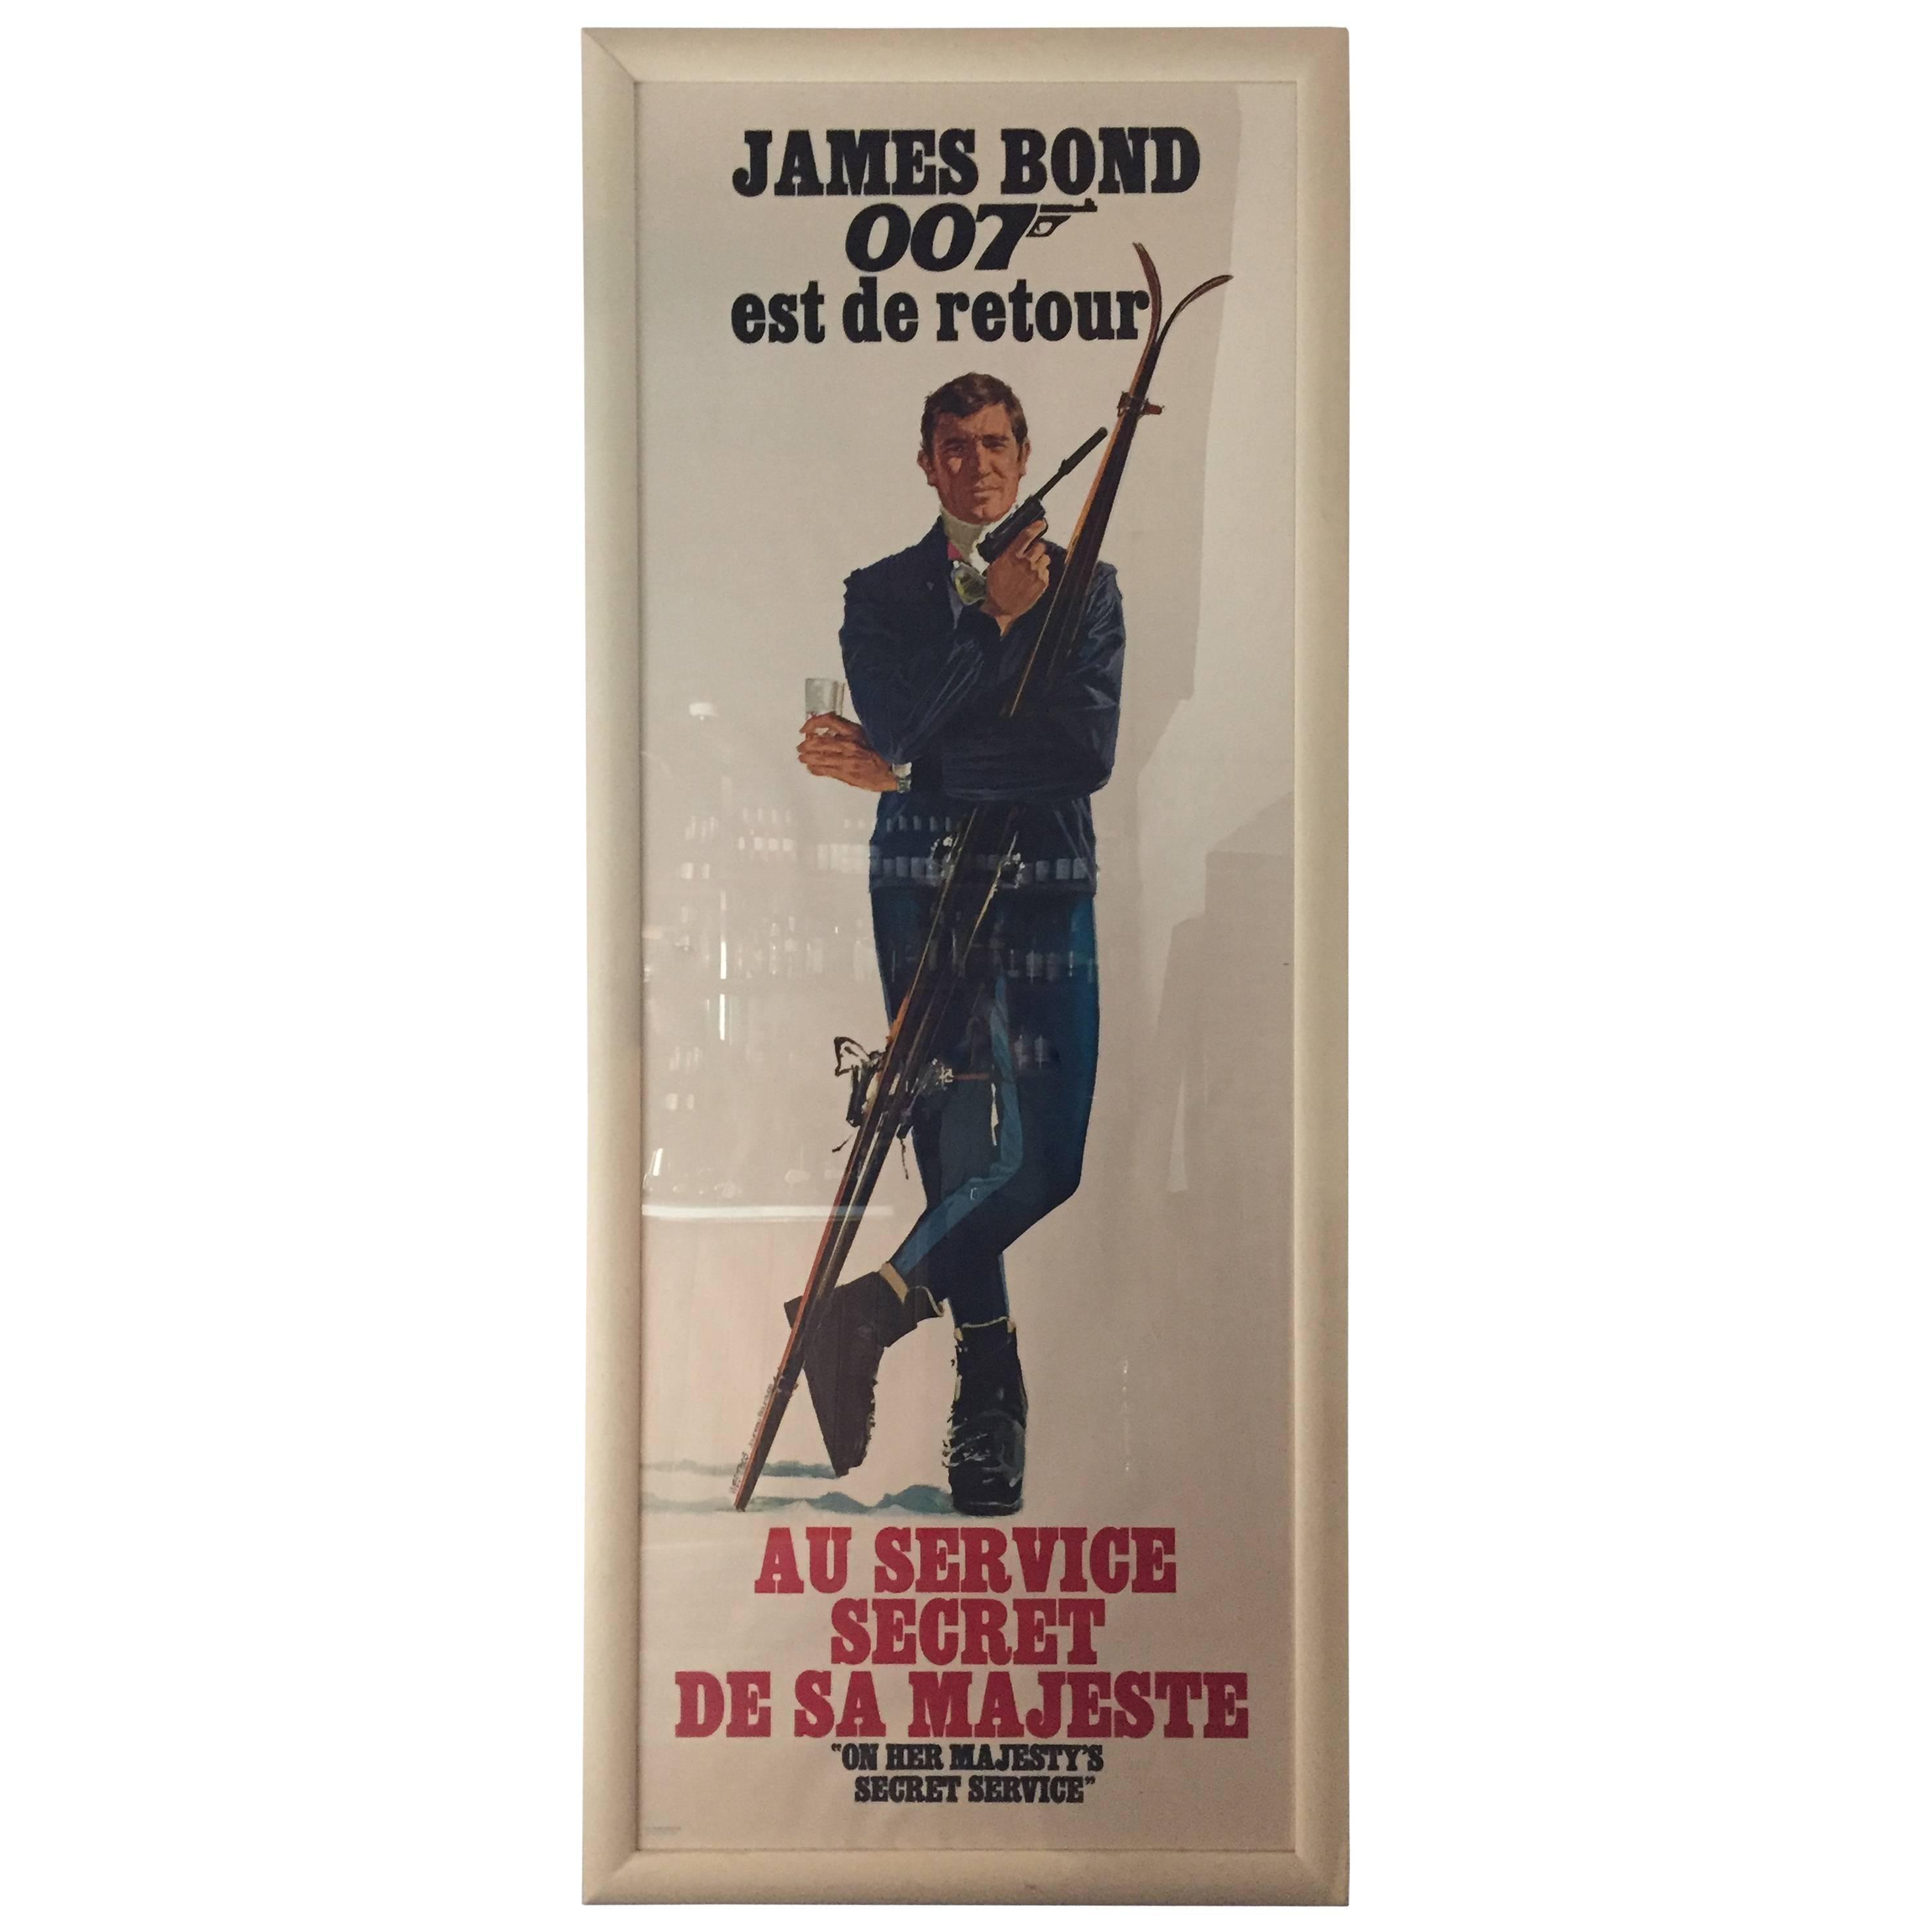 James Bond Poster "On Her Majesty's Secret Service"